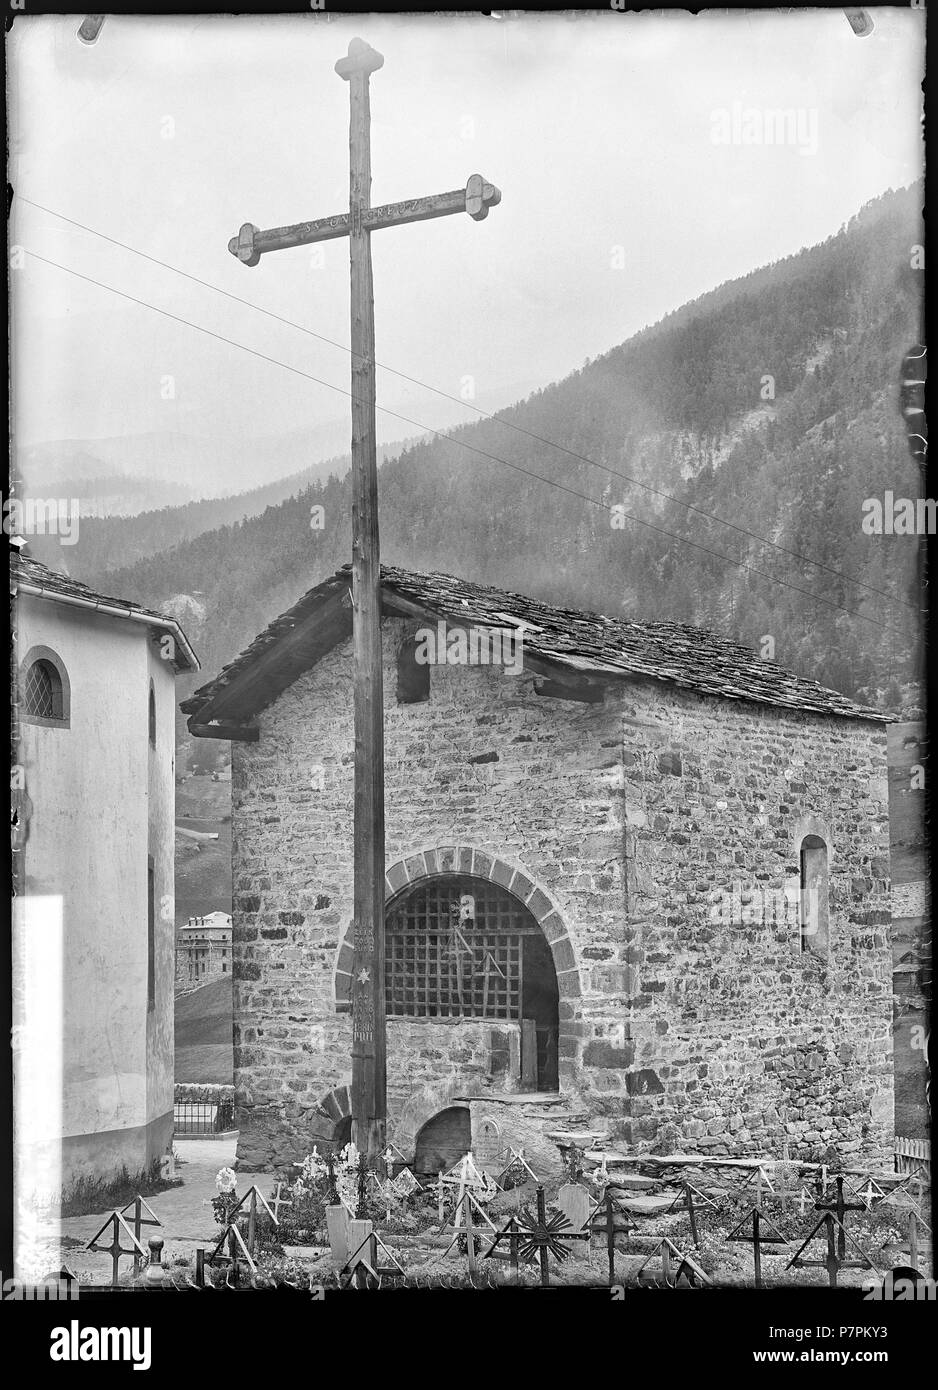 Zermatt, Beinhaus, vue d'ensemble; Vue d'ensemble de l'ossuaire à côté de l'ancienne église Saint-Maurice. 1902 87 CH-NB - Zermatt, Beinhaus, vue d'ensemble - Collection Max van Berchem - EAD-8651 Stock Photo